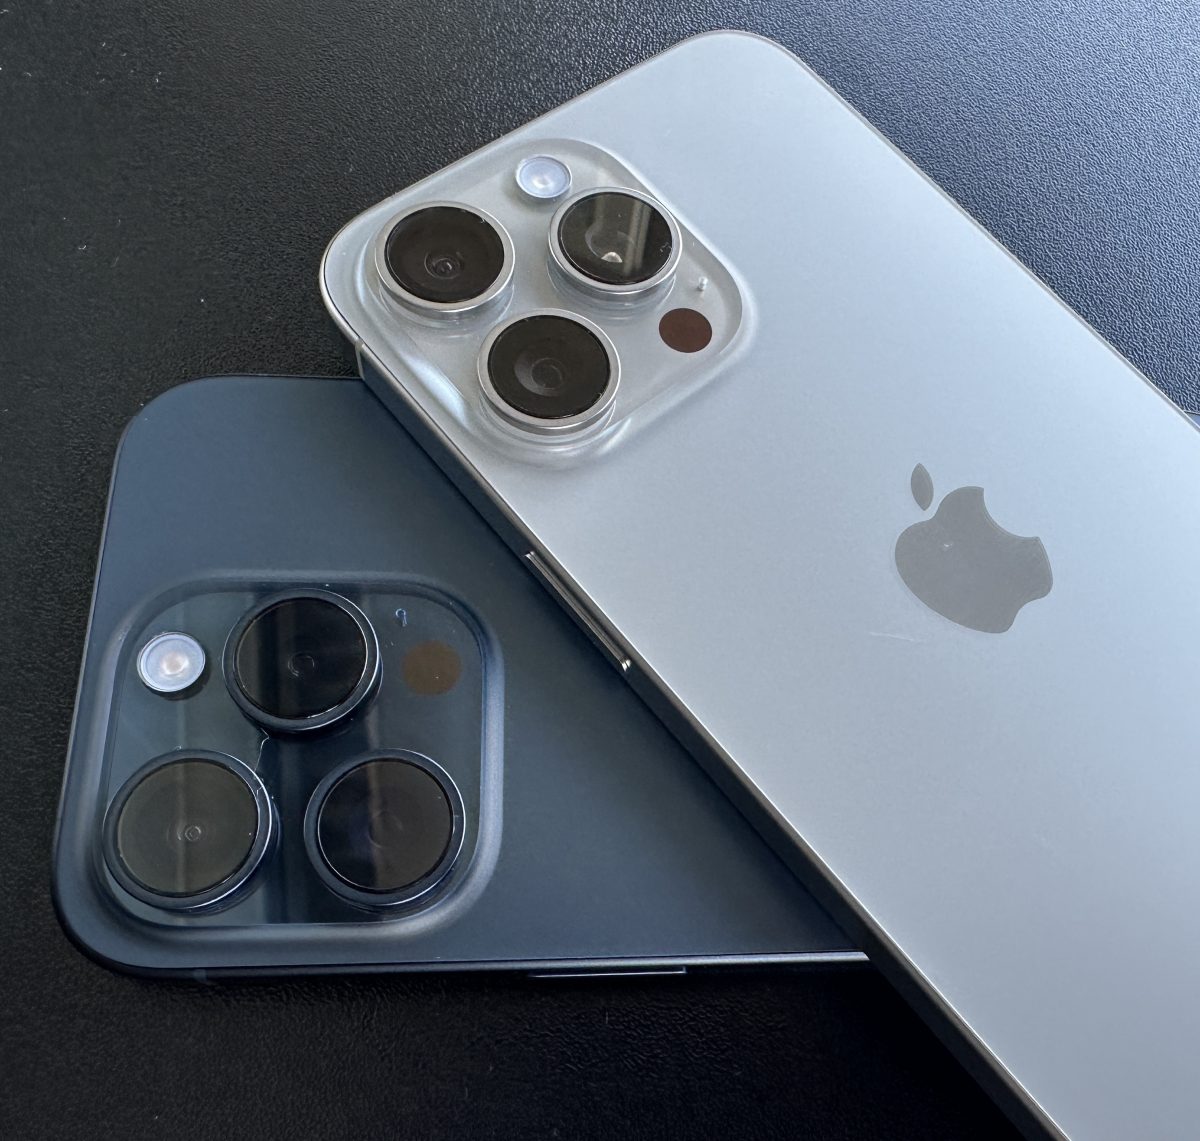 Vain iPhone 15 Pro Maxissa on 5x optisen zoomin telekamera. Kameran erilainen rakenne näkyy myös ulospäin linssin sisällä.